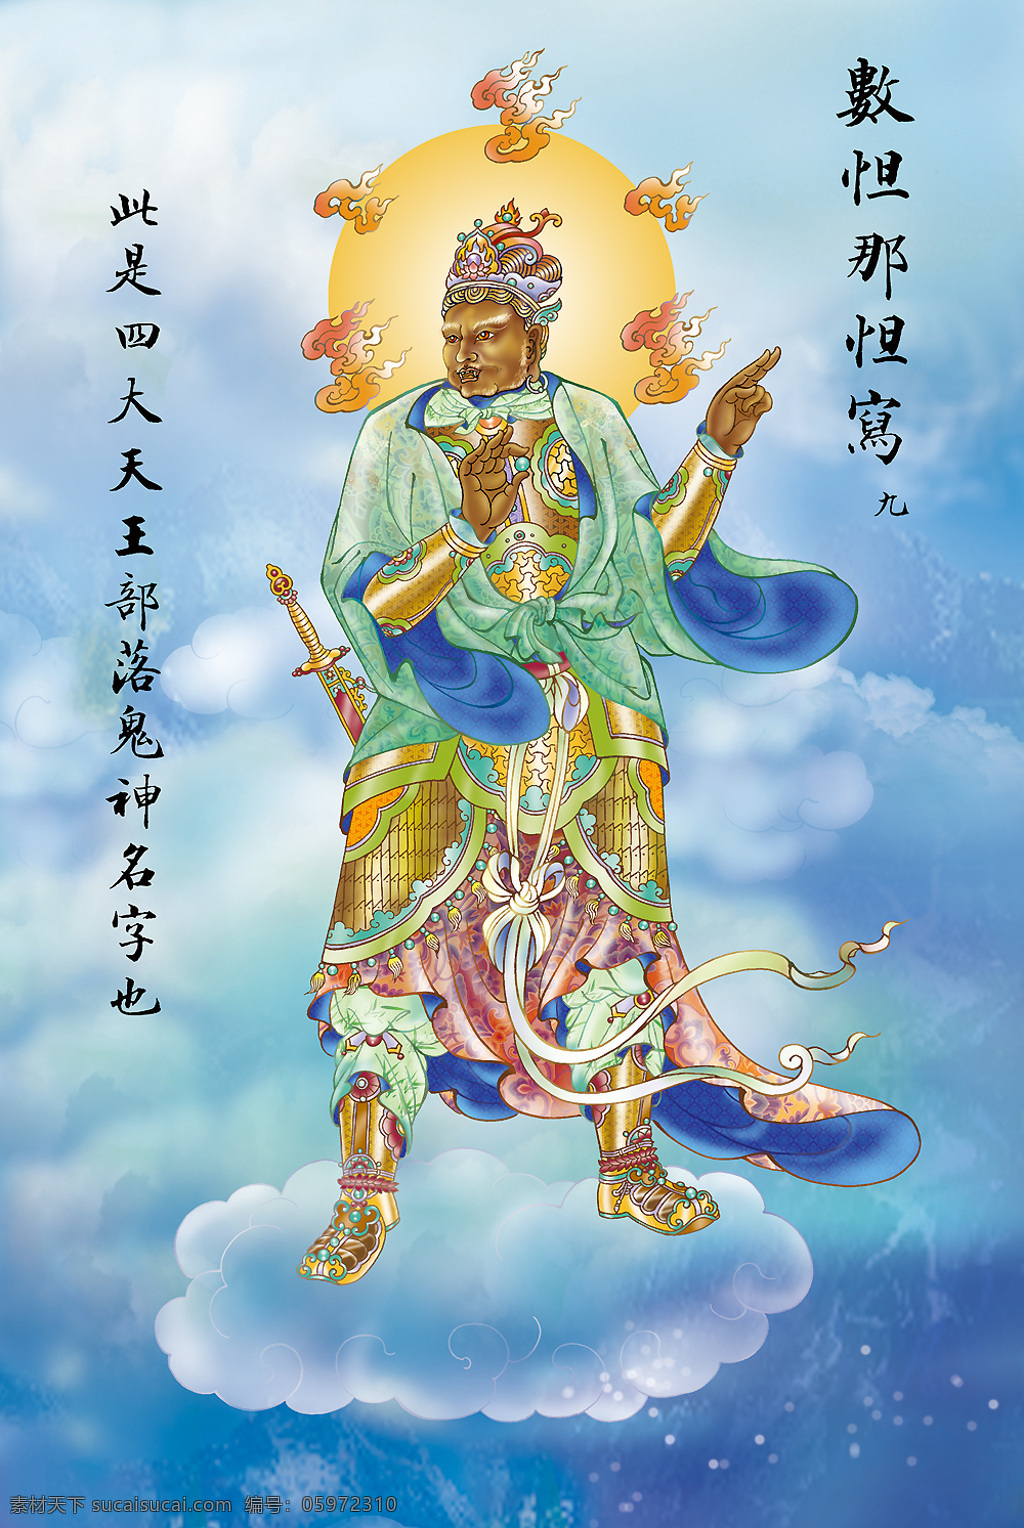 大悲出相图9 佛教 依林法师画 林隆达居士书 台湾 文化艺术 宗教信仰 设计图库